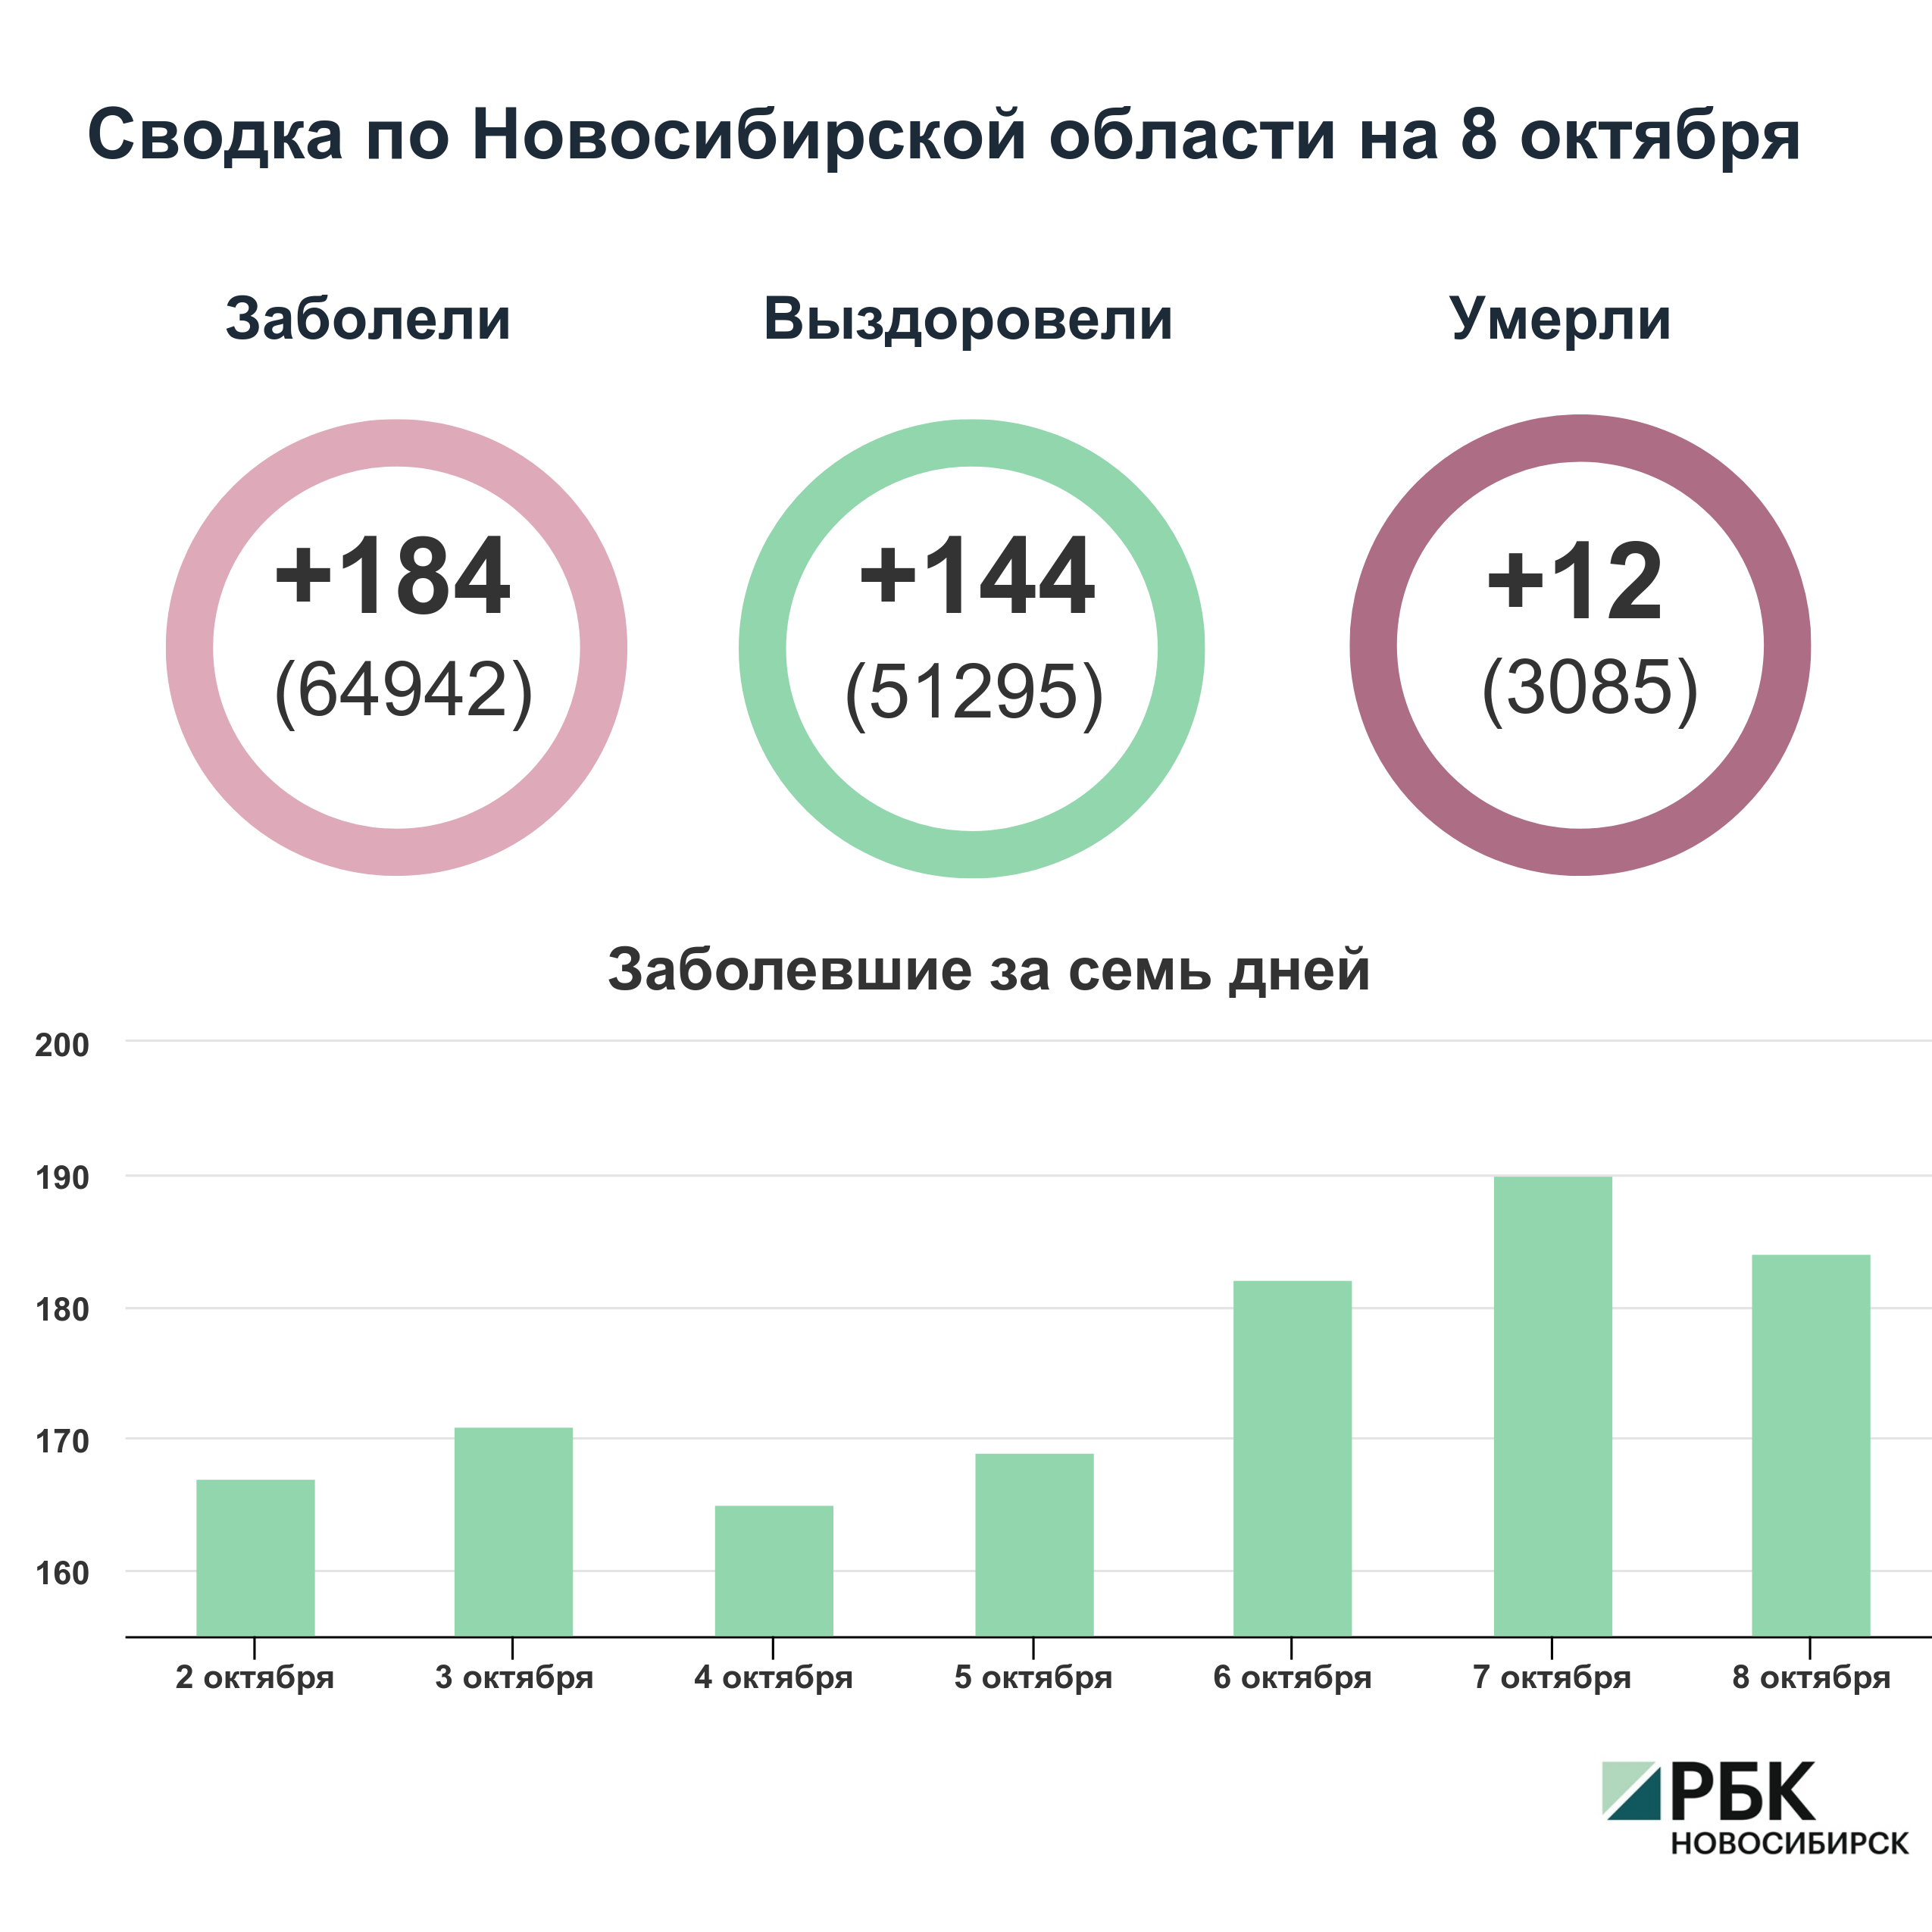 Коронавирус в Новосибирске: сводка на 8 октября